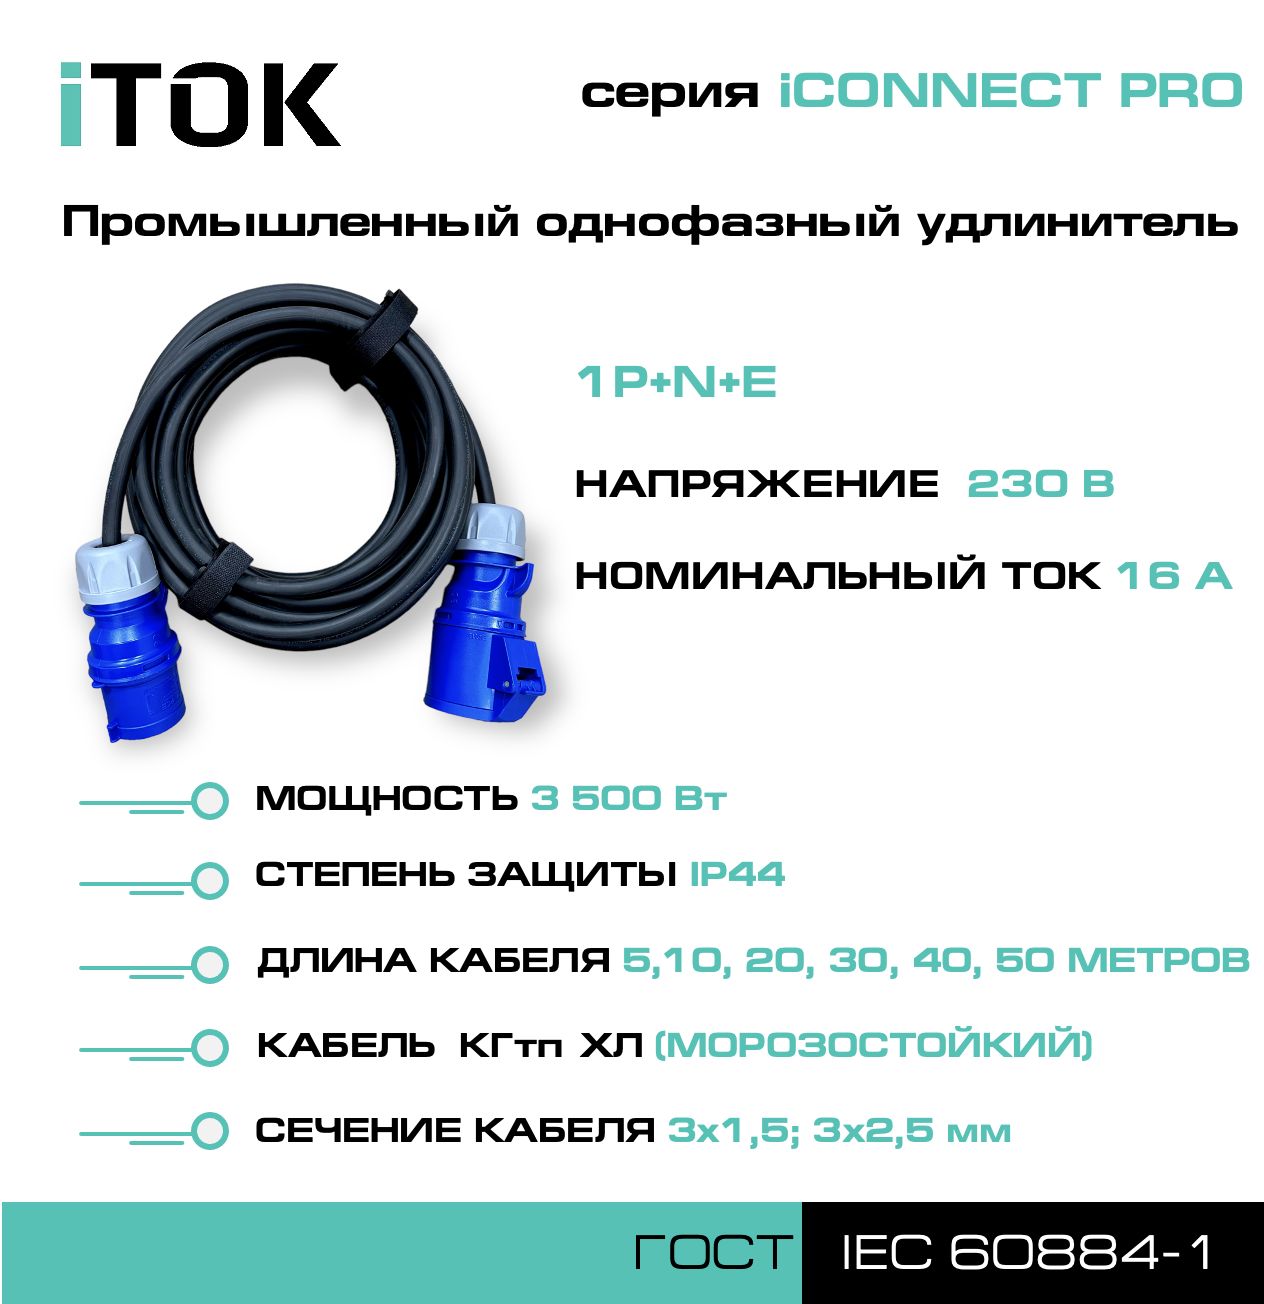 удлинитель силовой с заземлением itok iconnect pro кгтп хл 3х2 5 мм 1 гнездо ip54 5м Удлинитель силовой iTOK iCONNECT PRO 230В 16А 40м КГтп-ХЛ 3х1,5 мм 1P+N+E, IP44